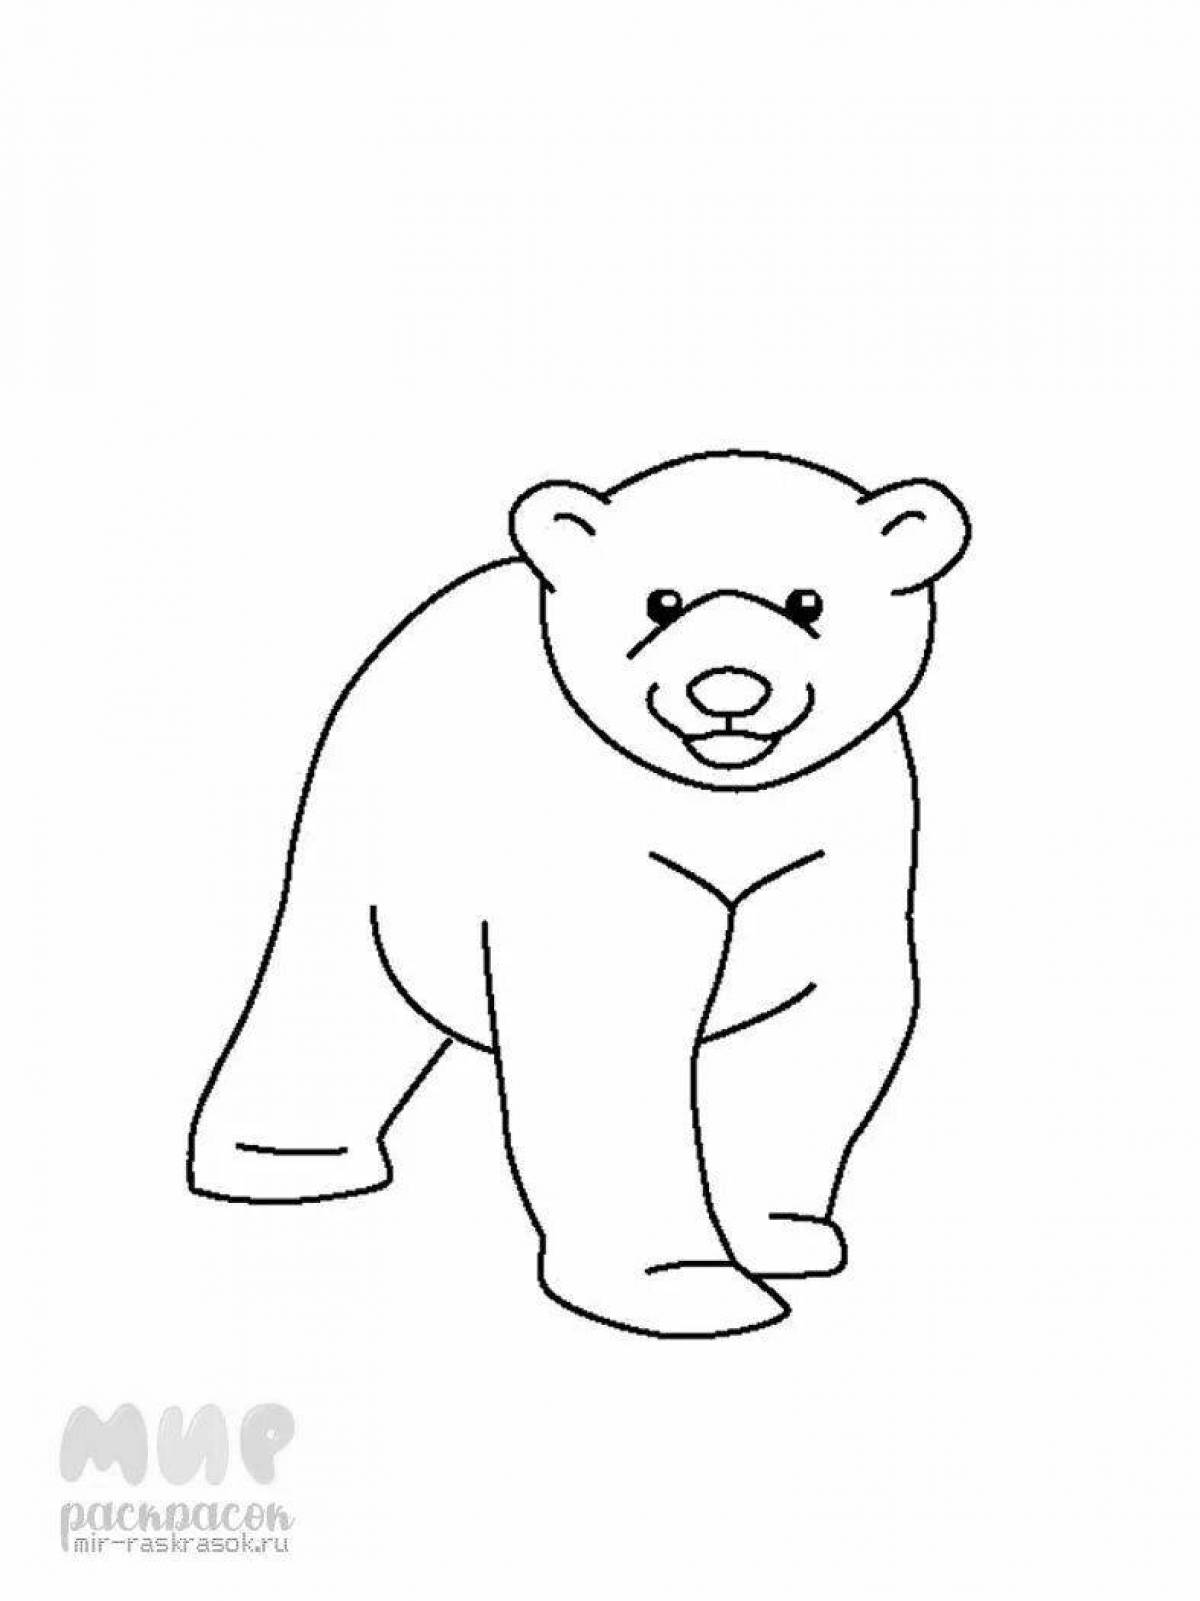 Attractive polar bear coloring book